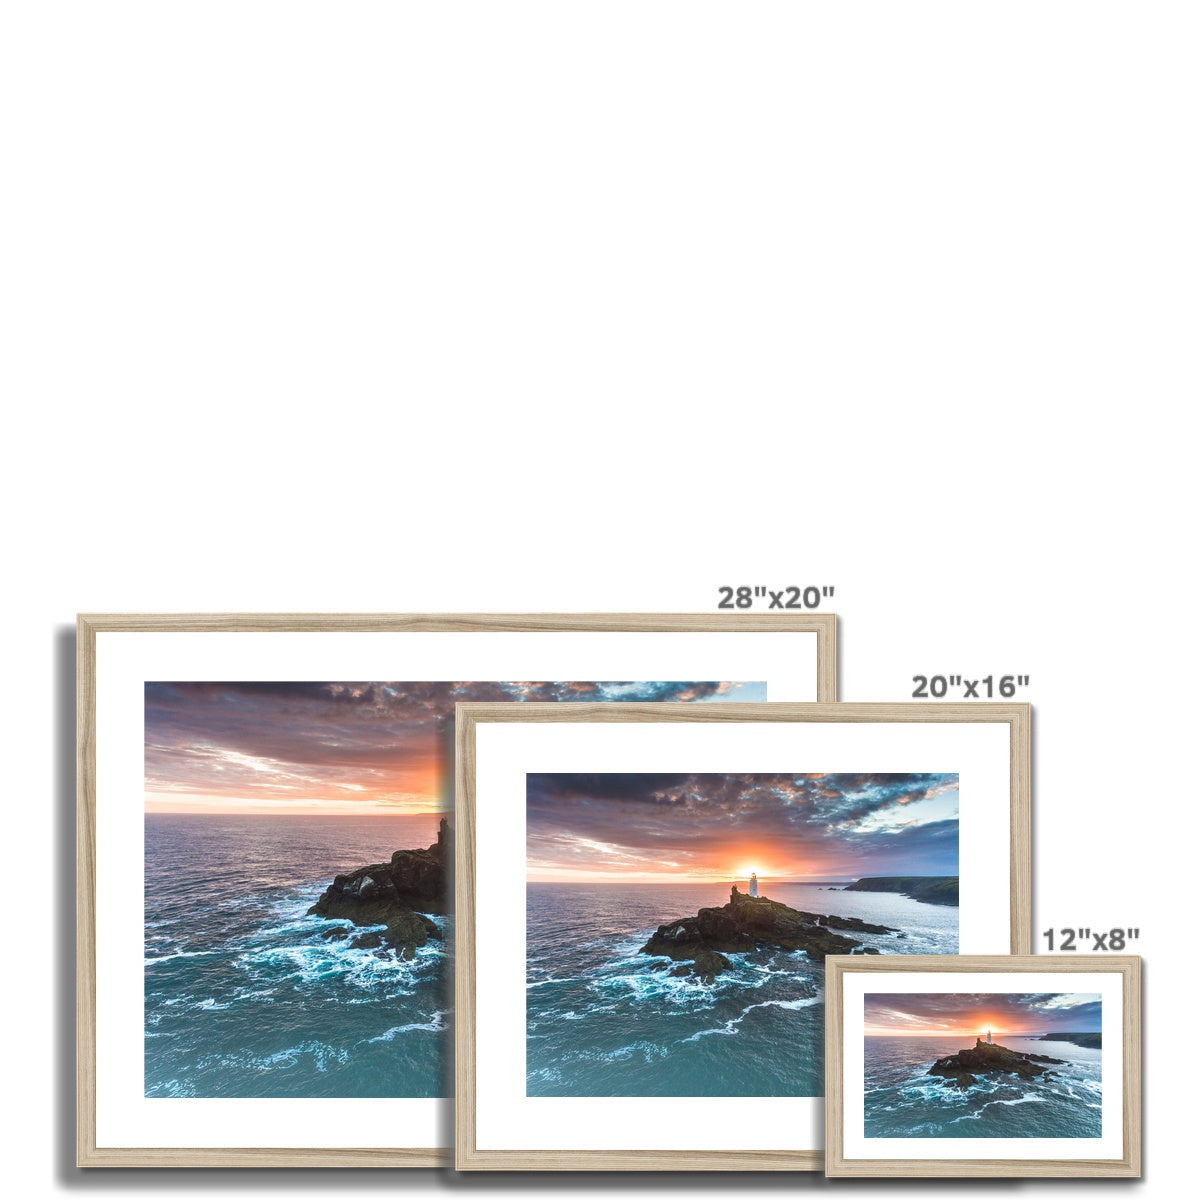 godrevy lighthouse dawn landscape frame sizes